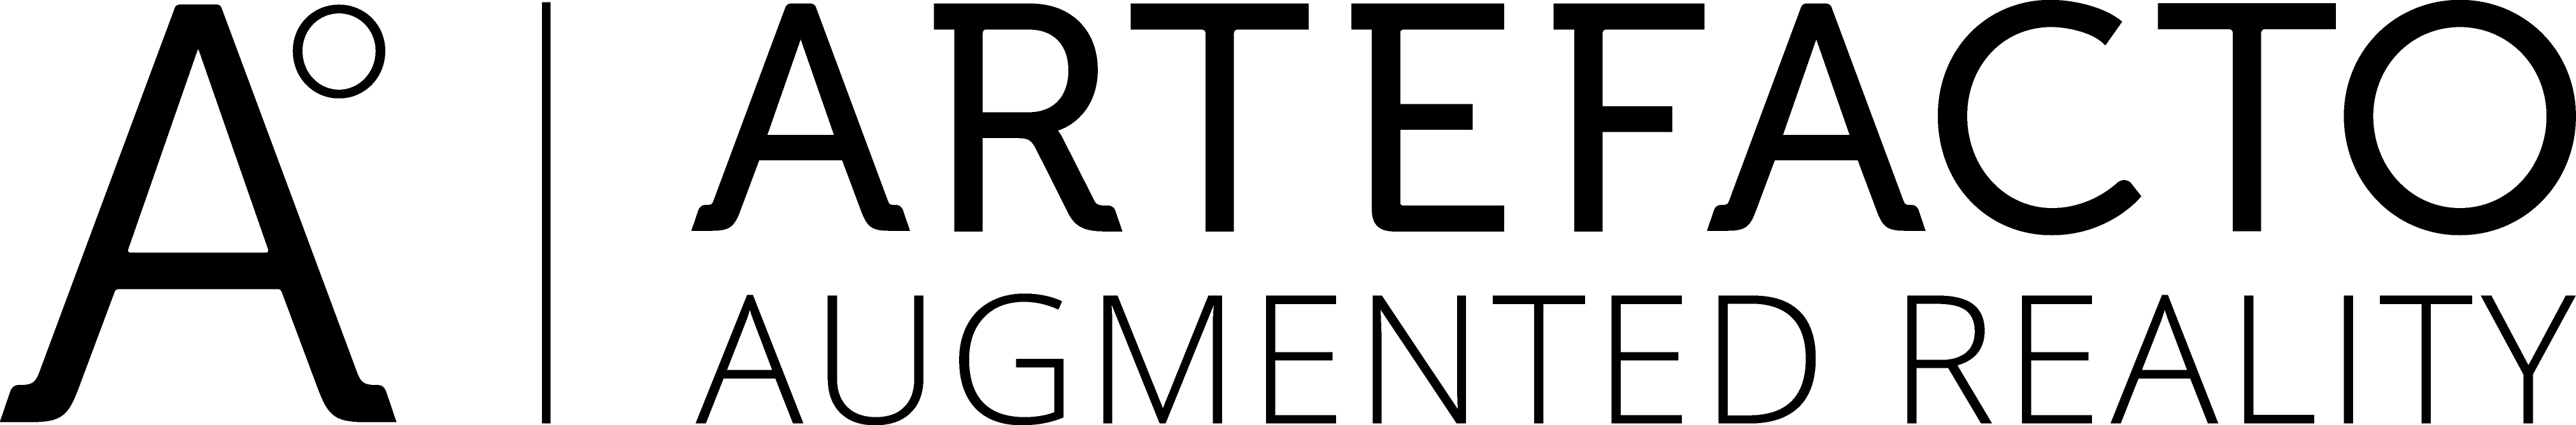 logo Artefacto